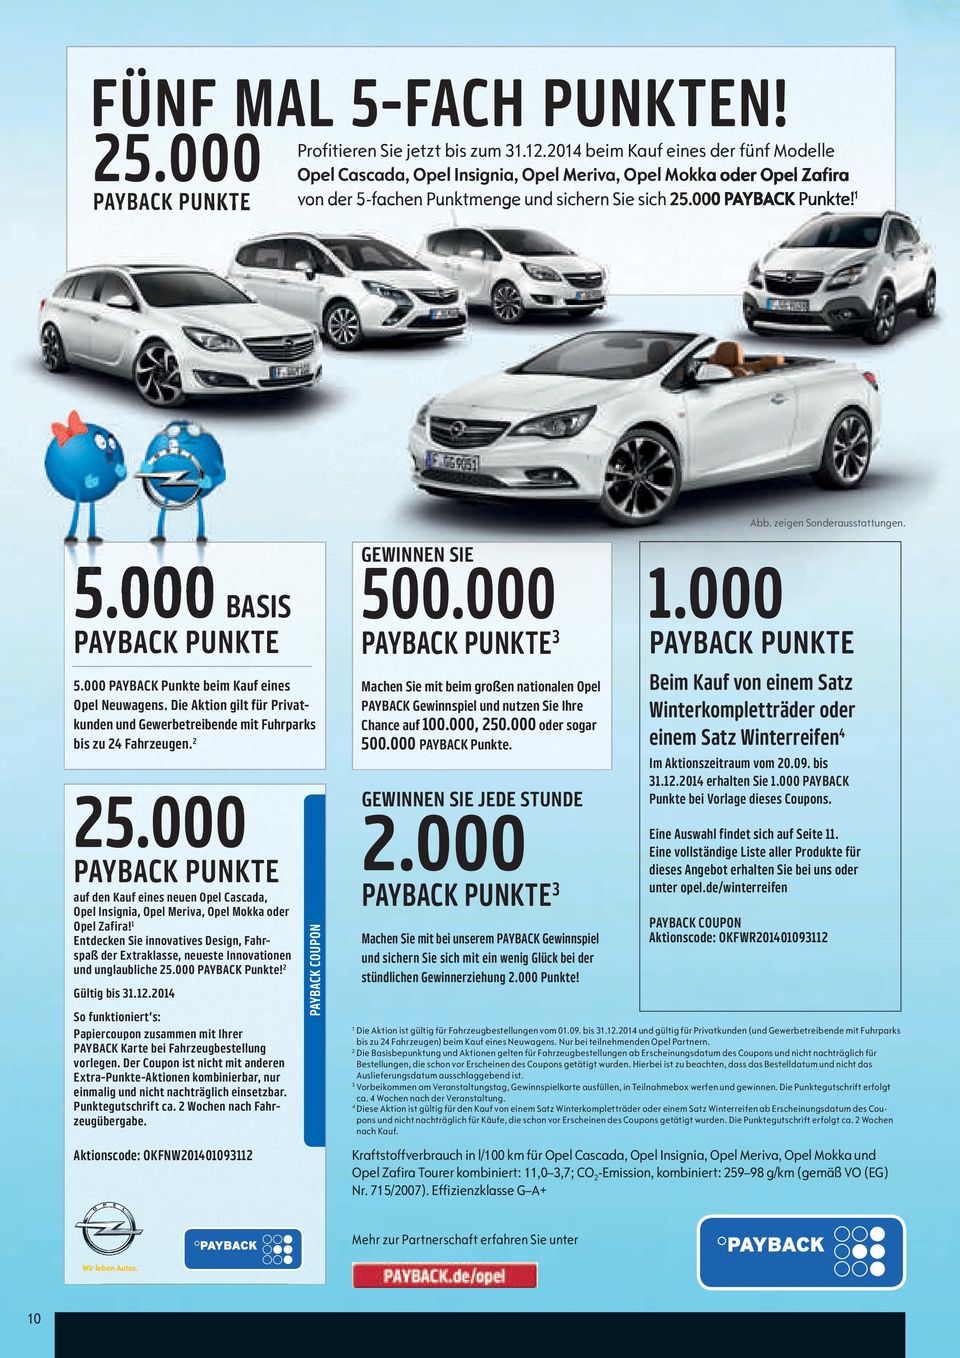 zeigen sonderausstattungen. 5.000 BASIS PAYBACK PUNKTE 5.000 PAYBACK Punkte beim Kauf eines Opel Neuwagens. Die Aktion gilt für Privatkunden und Gewerbetreibende mit Fuhrparks bis zu 24 Fahrzeugen.